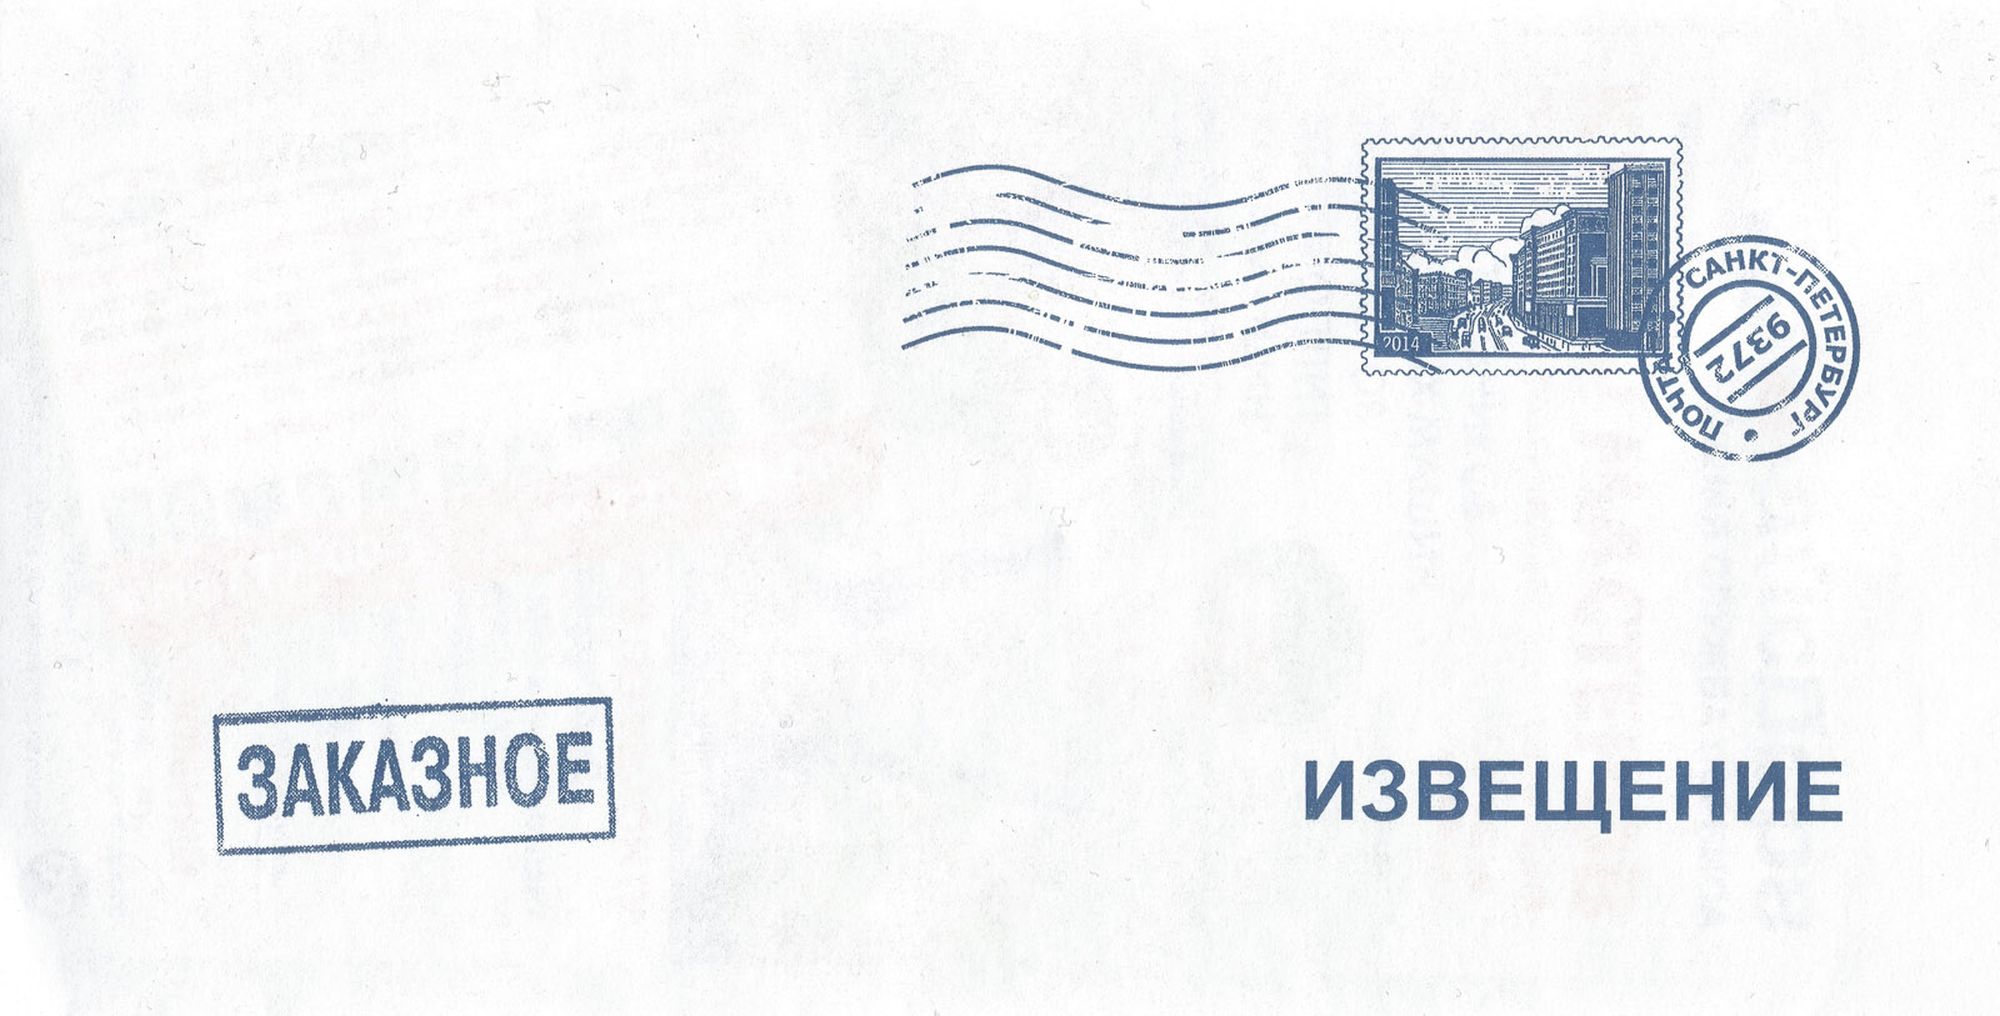 Заказное письмо Красноярск ДТИ — что это такое, извещение, адрес